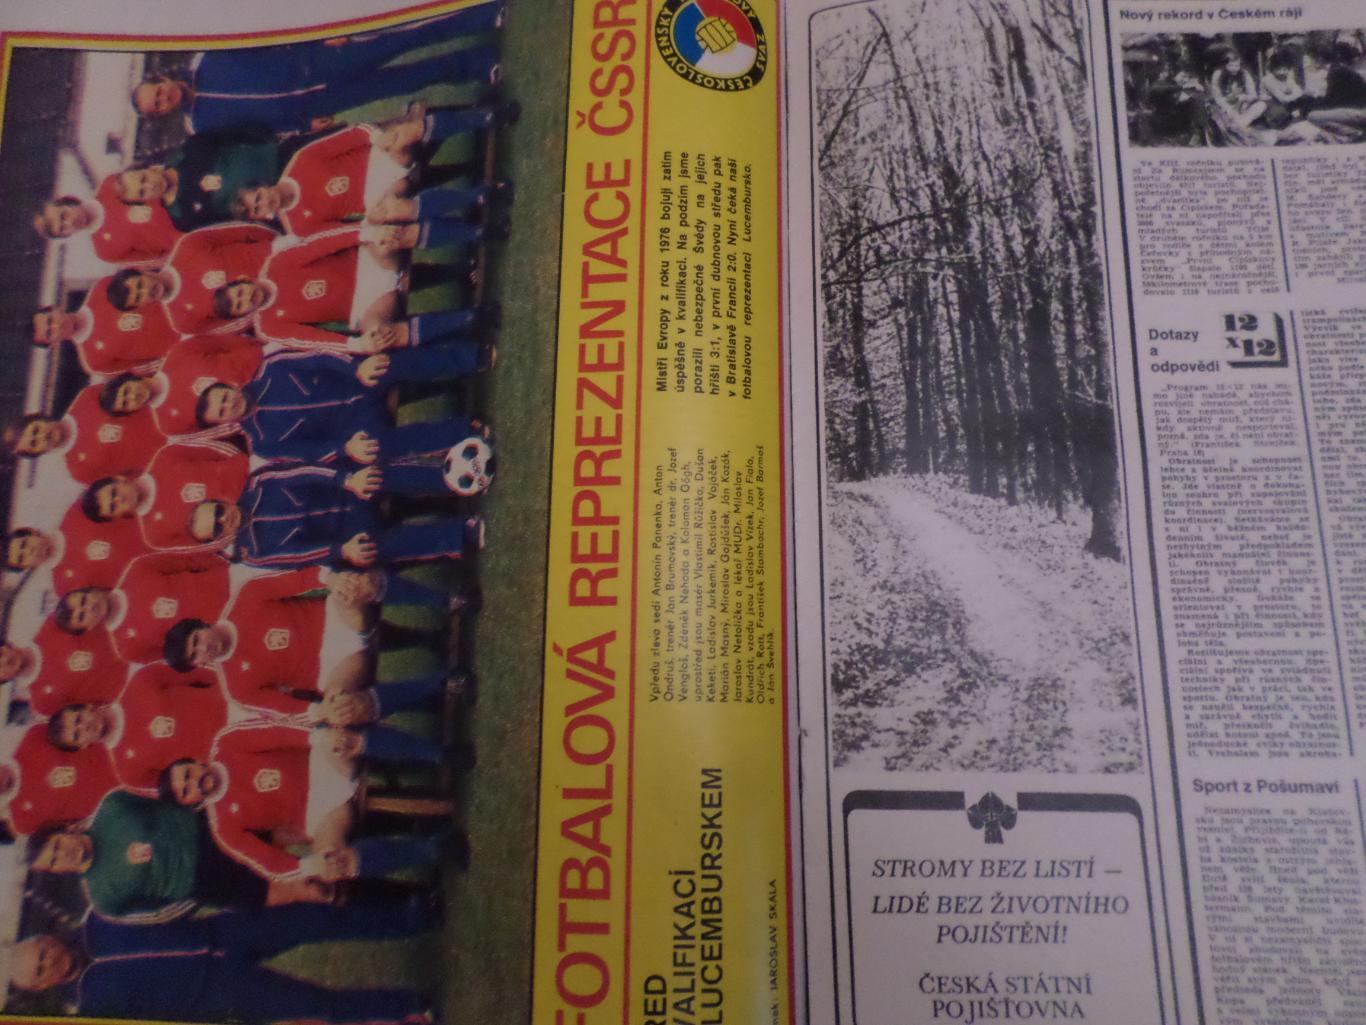 журнал Стадион Чехословакия № 17 1979 г постер сборная Чехословакии 1